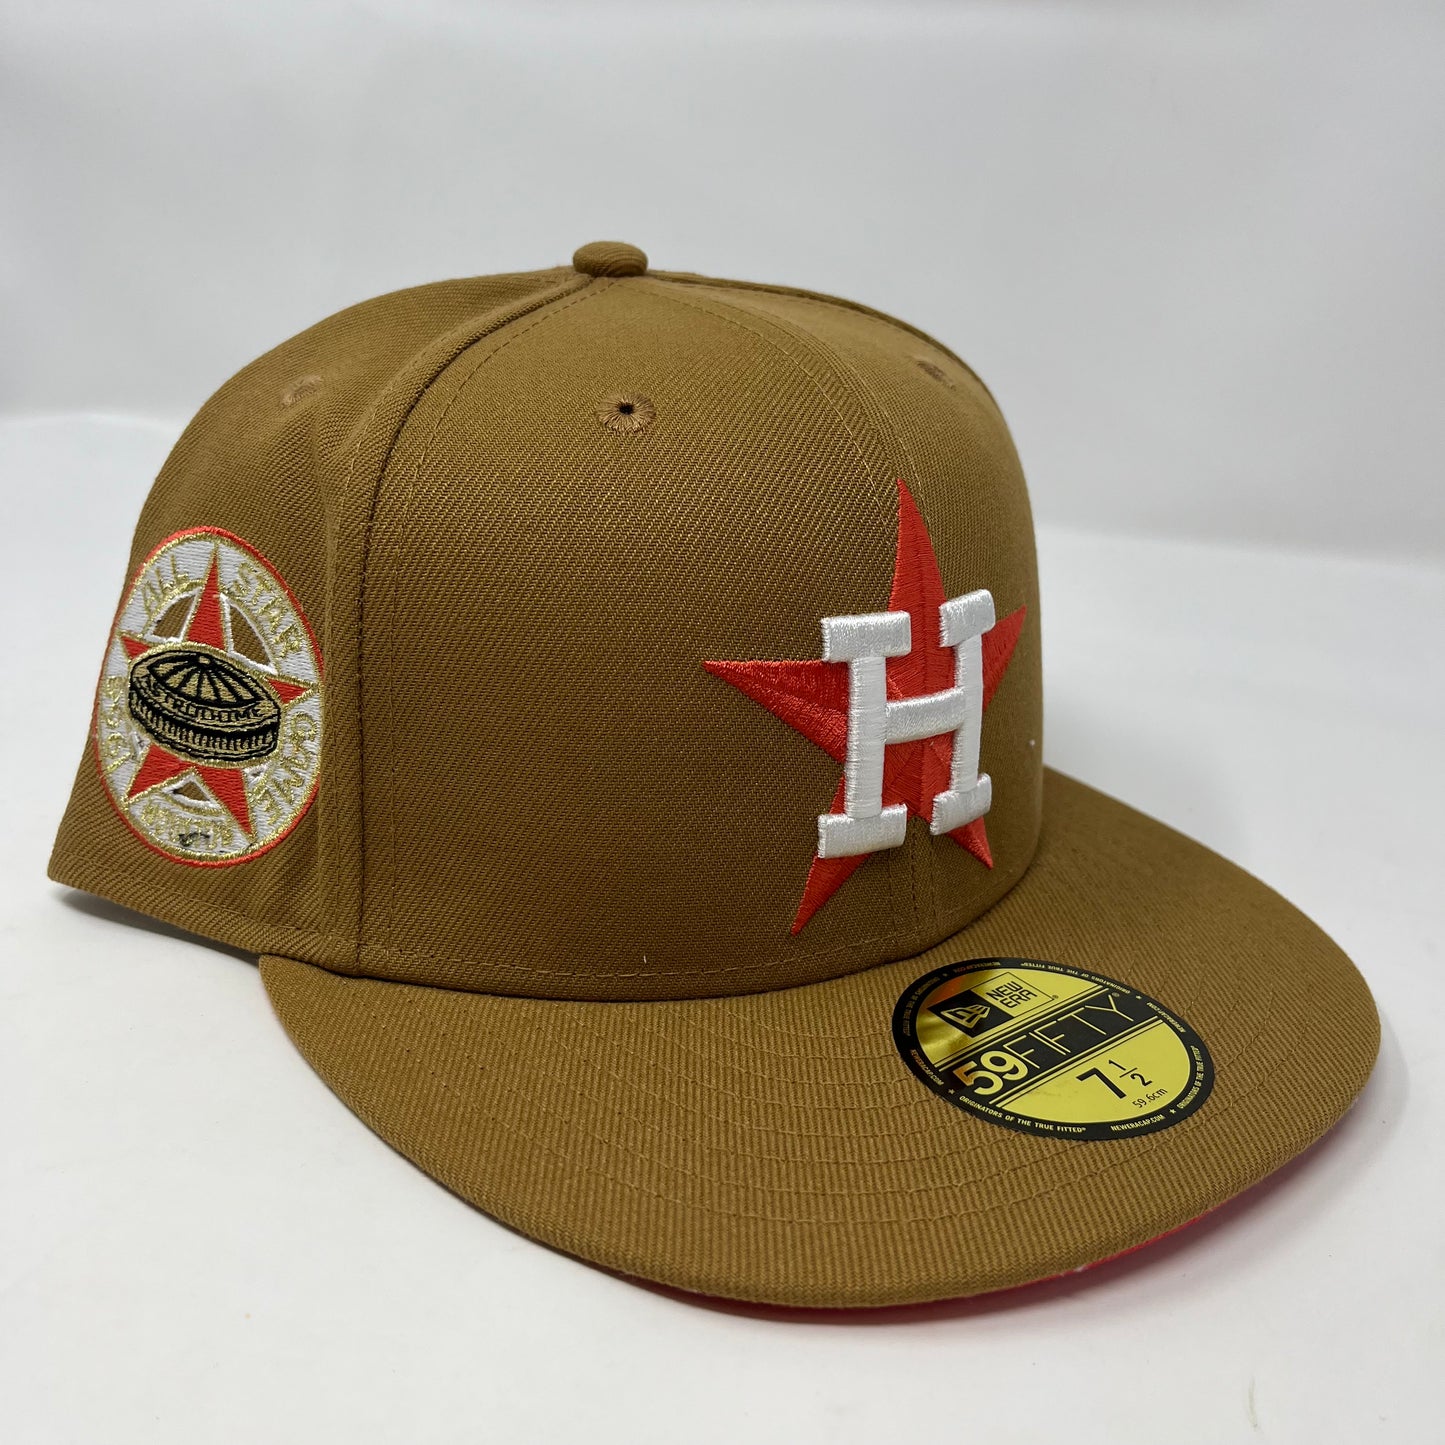 Astros Tan/Orange Hat